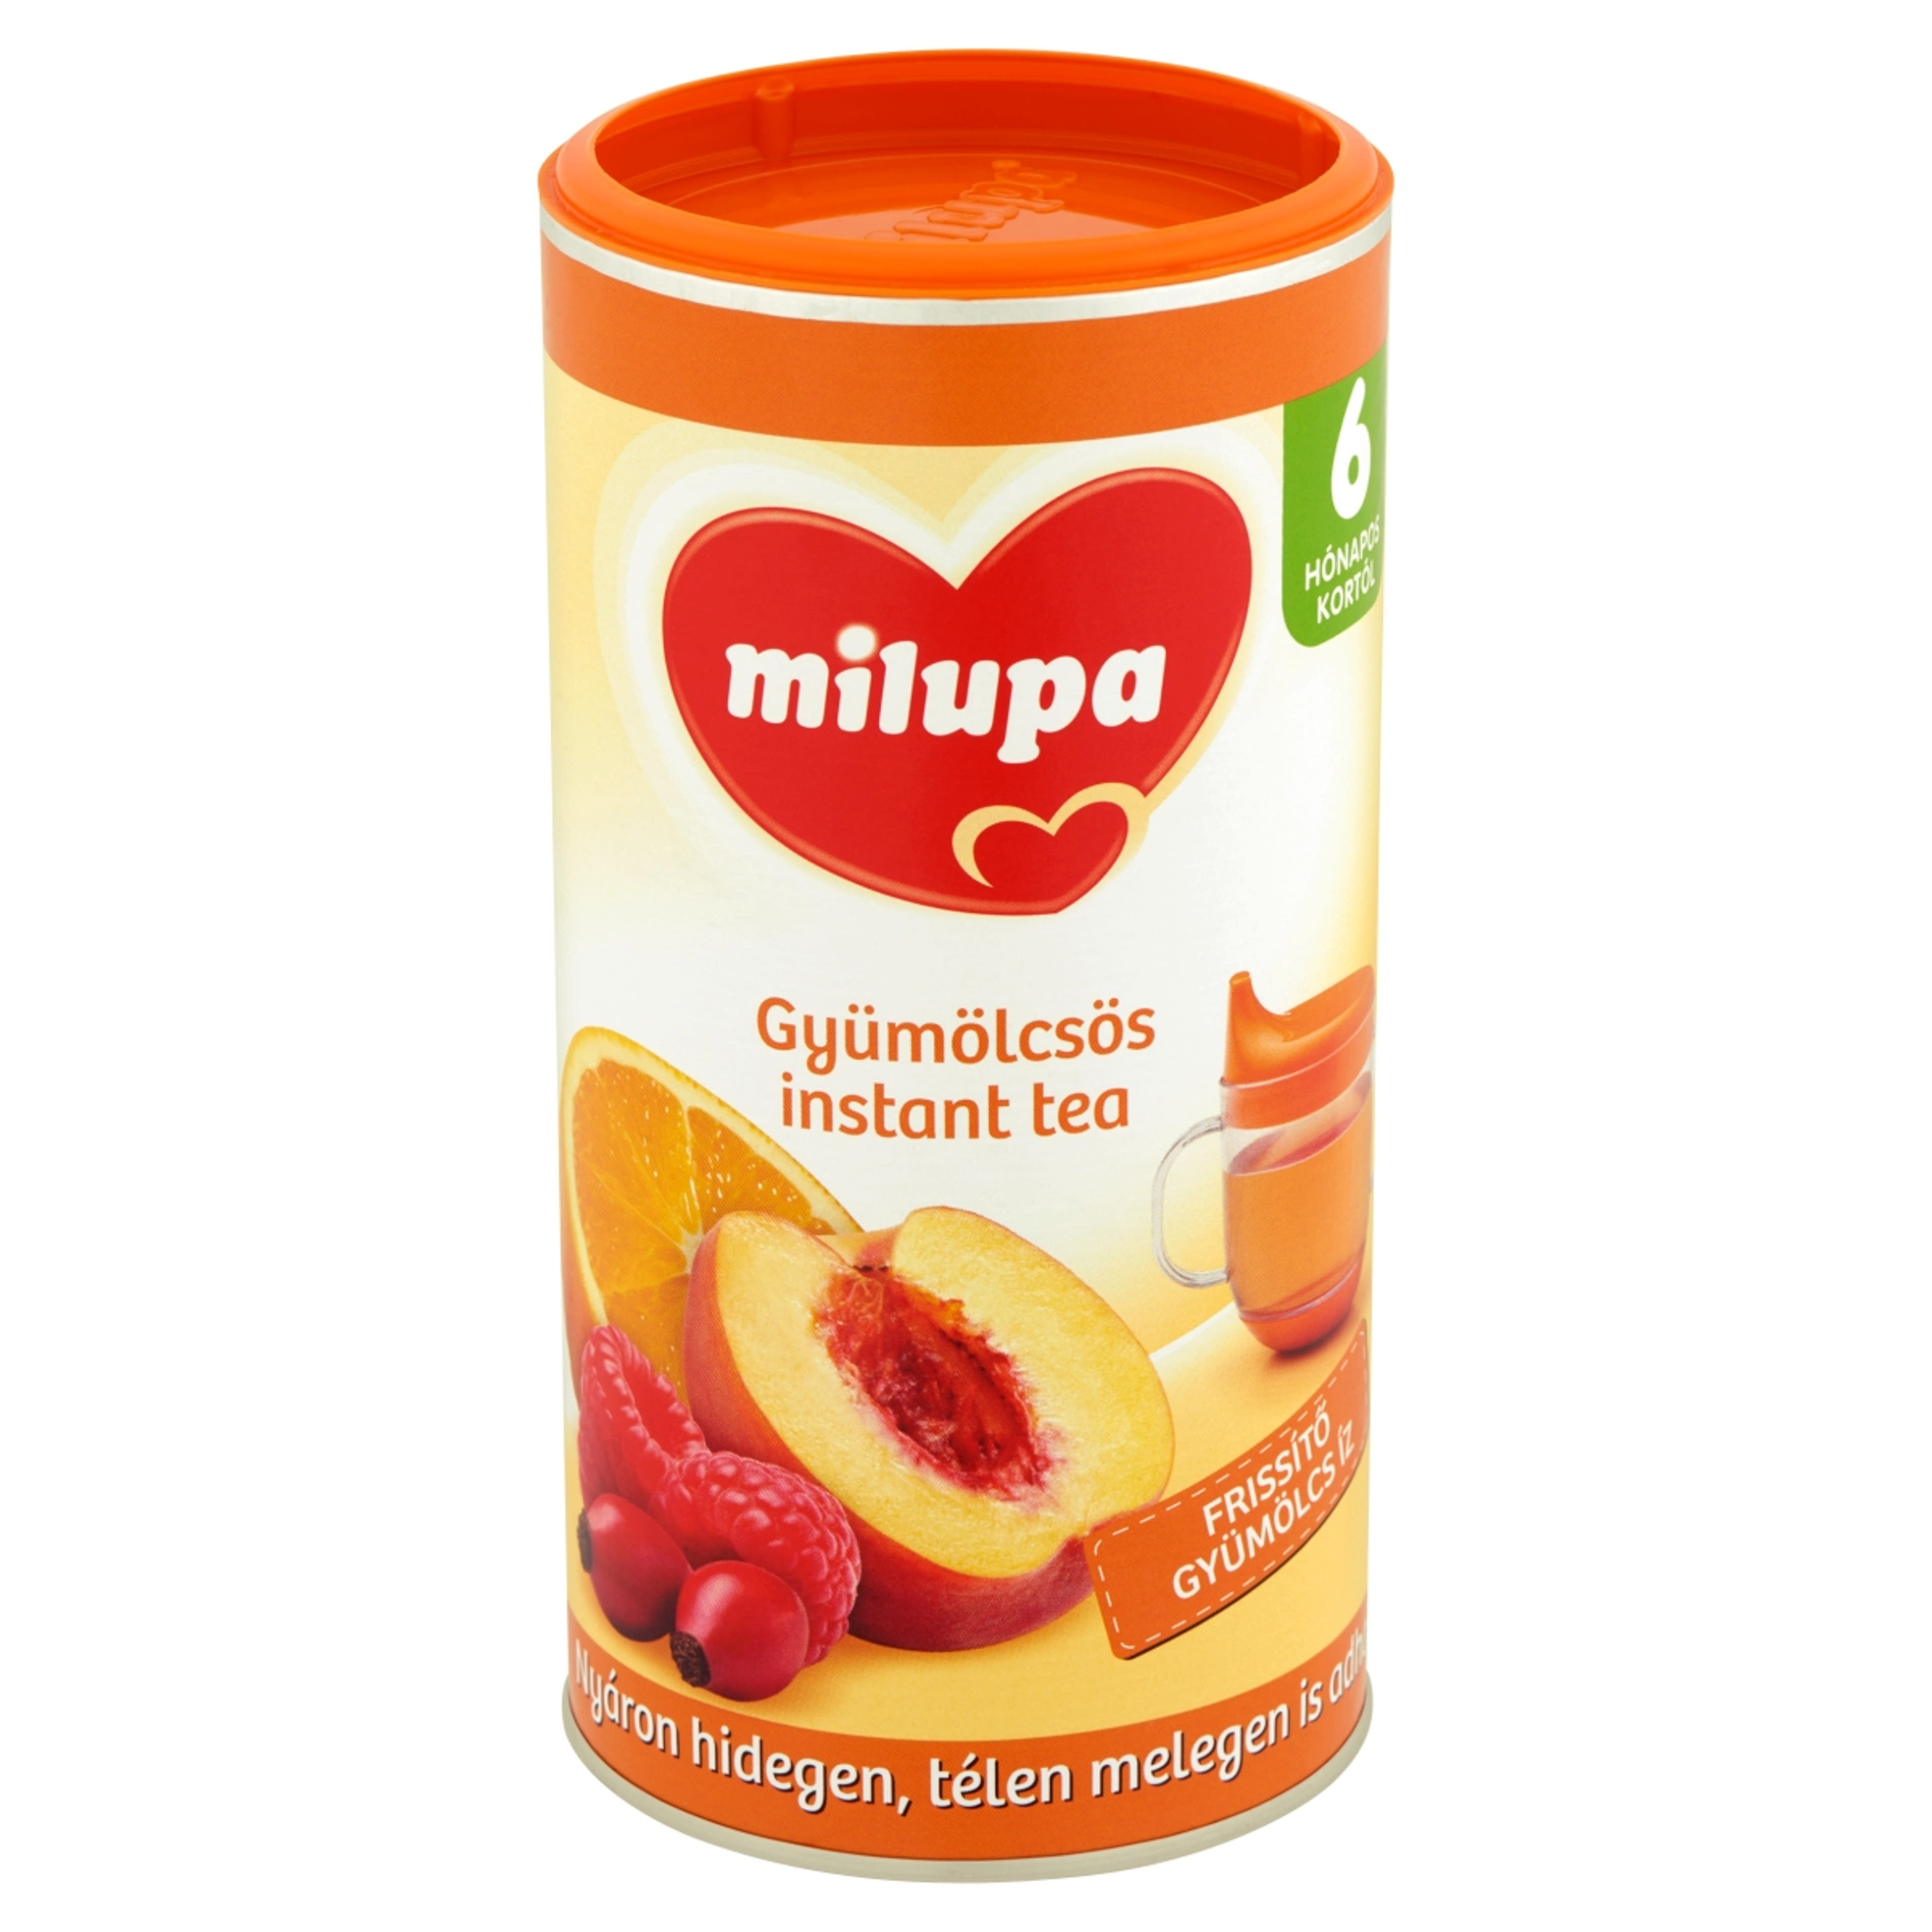 Milupa Instant Tea Gyümölcsös 6 Hónapos Kortól - 200 g-2